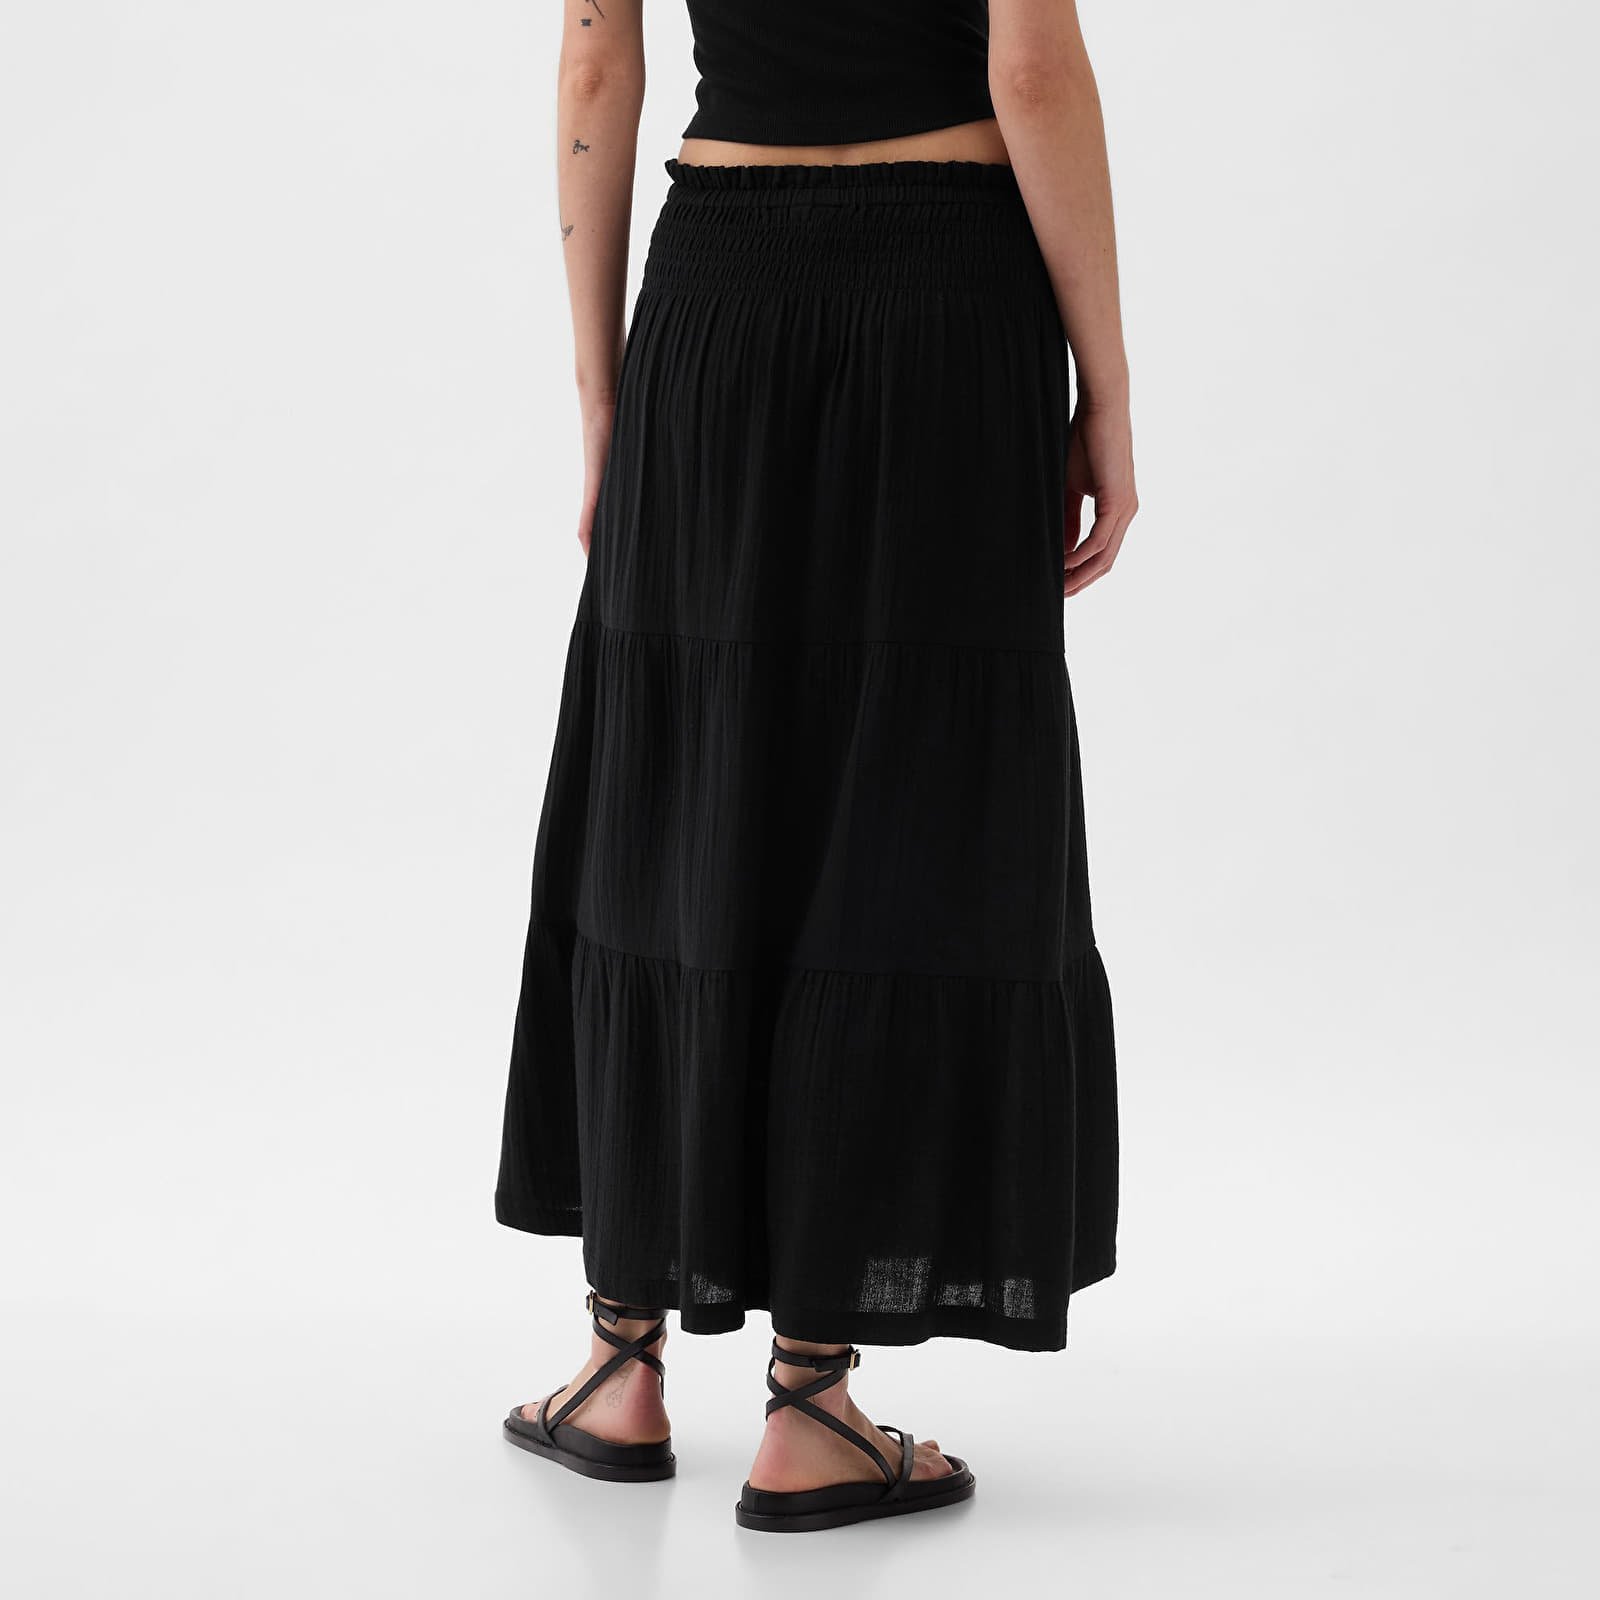 Skirt Pull On Gauze Maxi Skirt Black